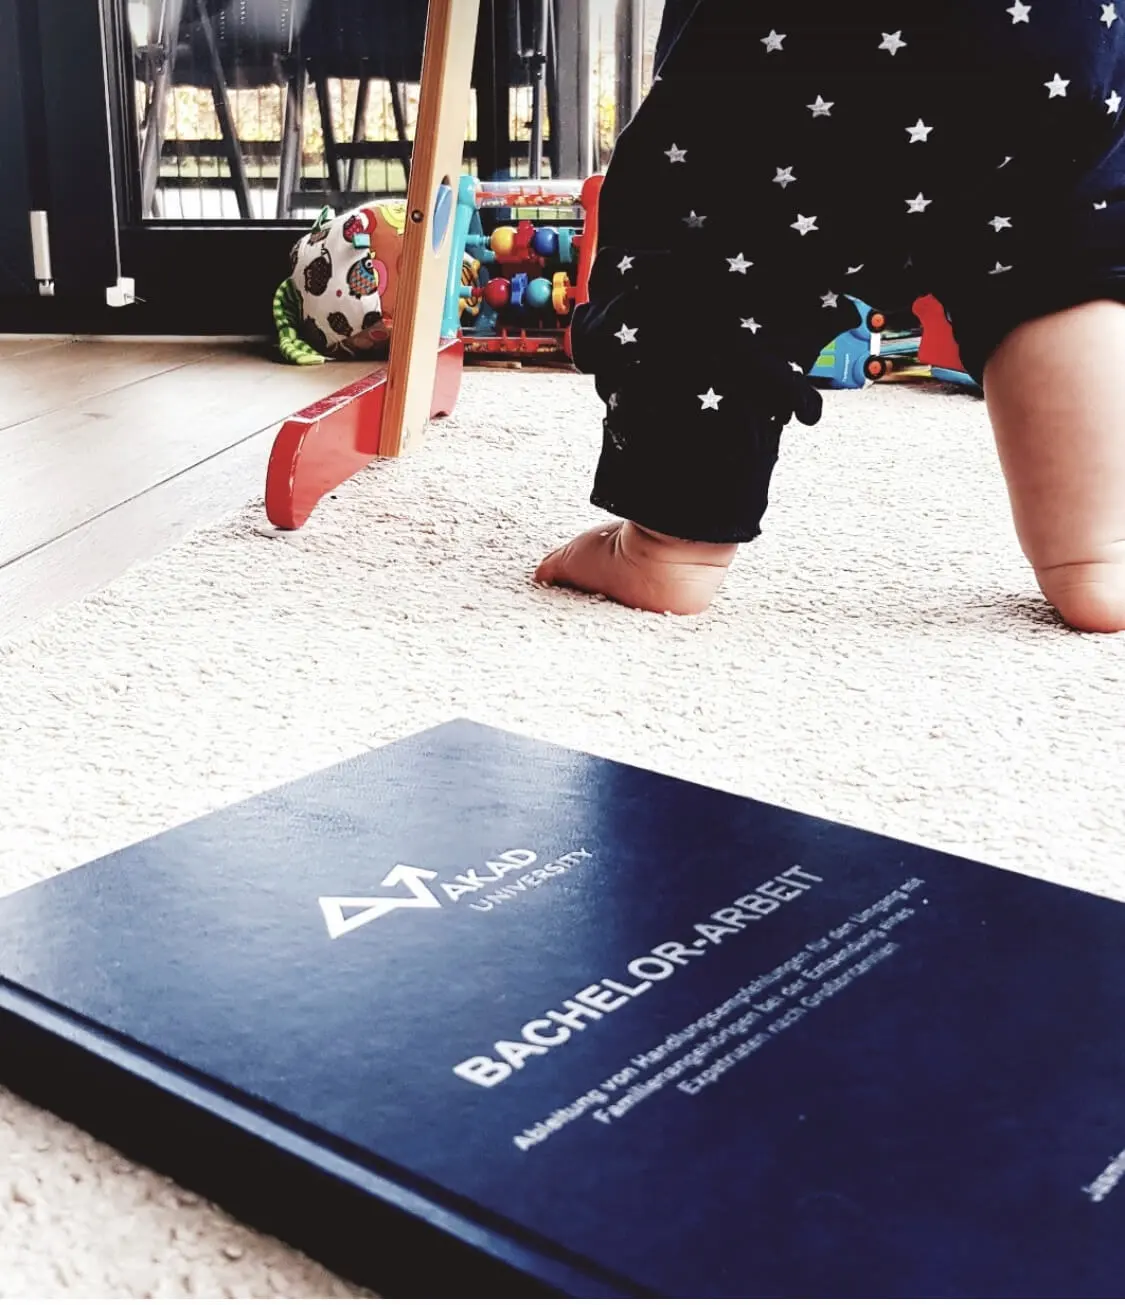 ein Baby, das neben einem Buch auf dem Boden steht.